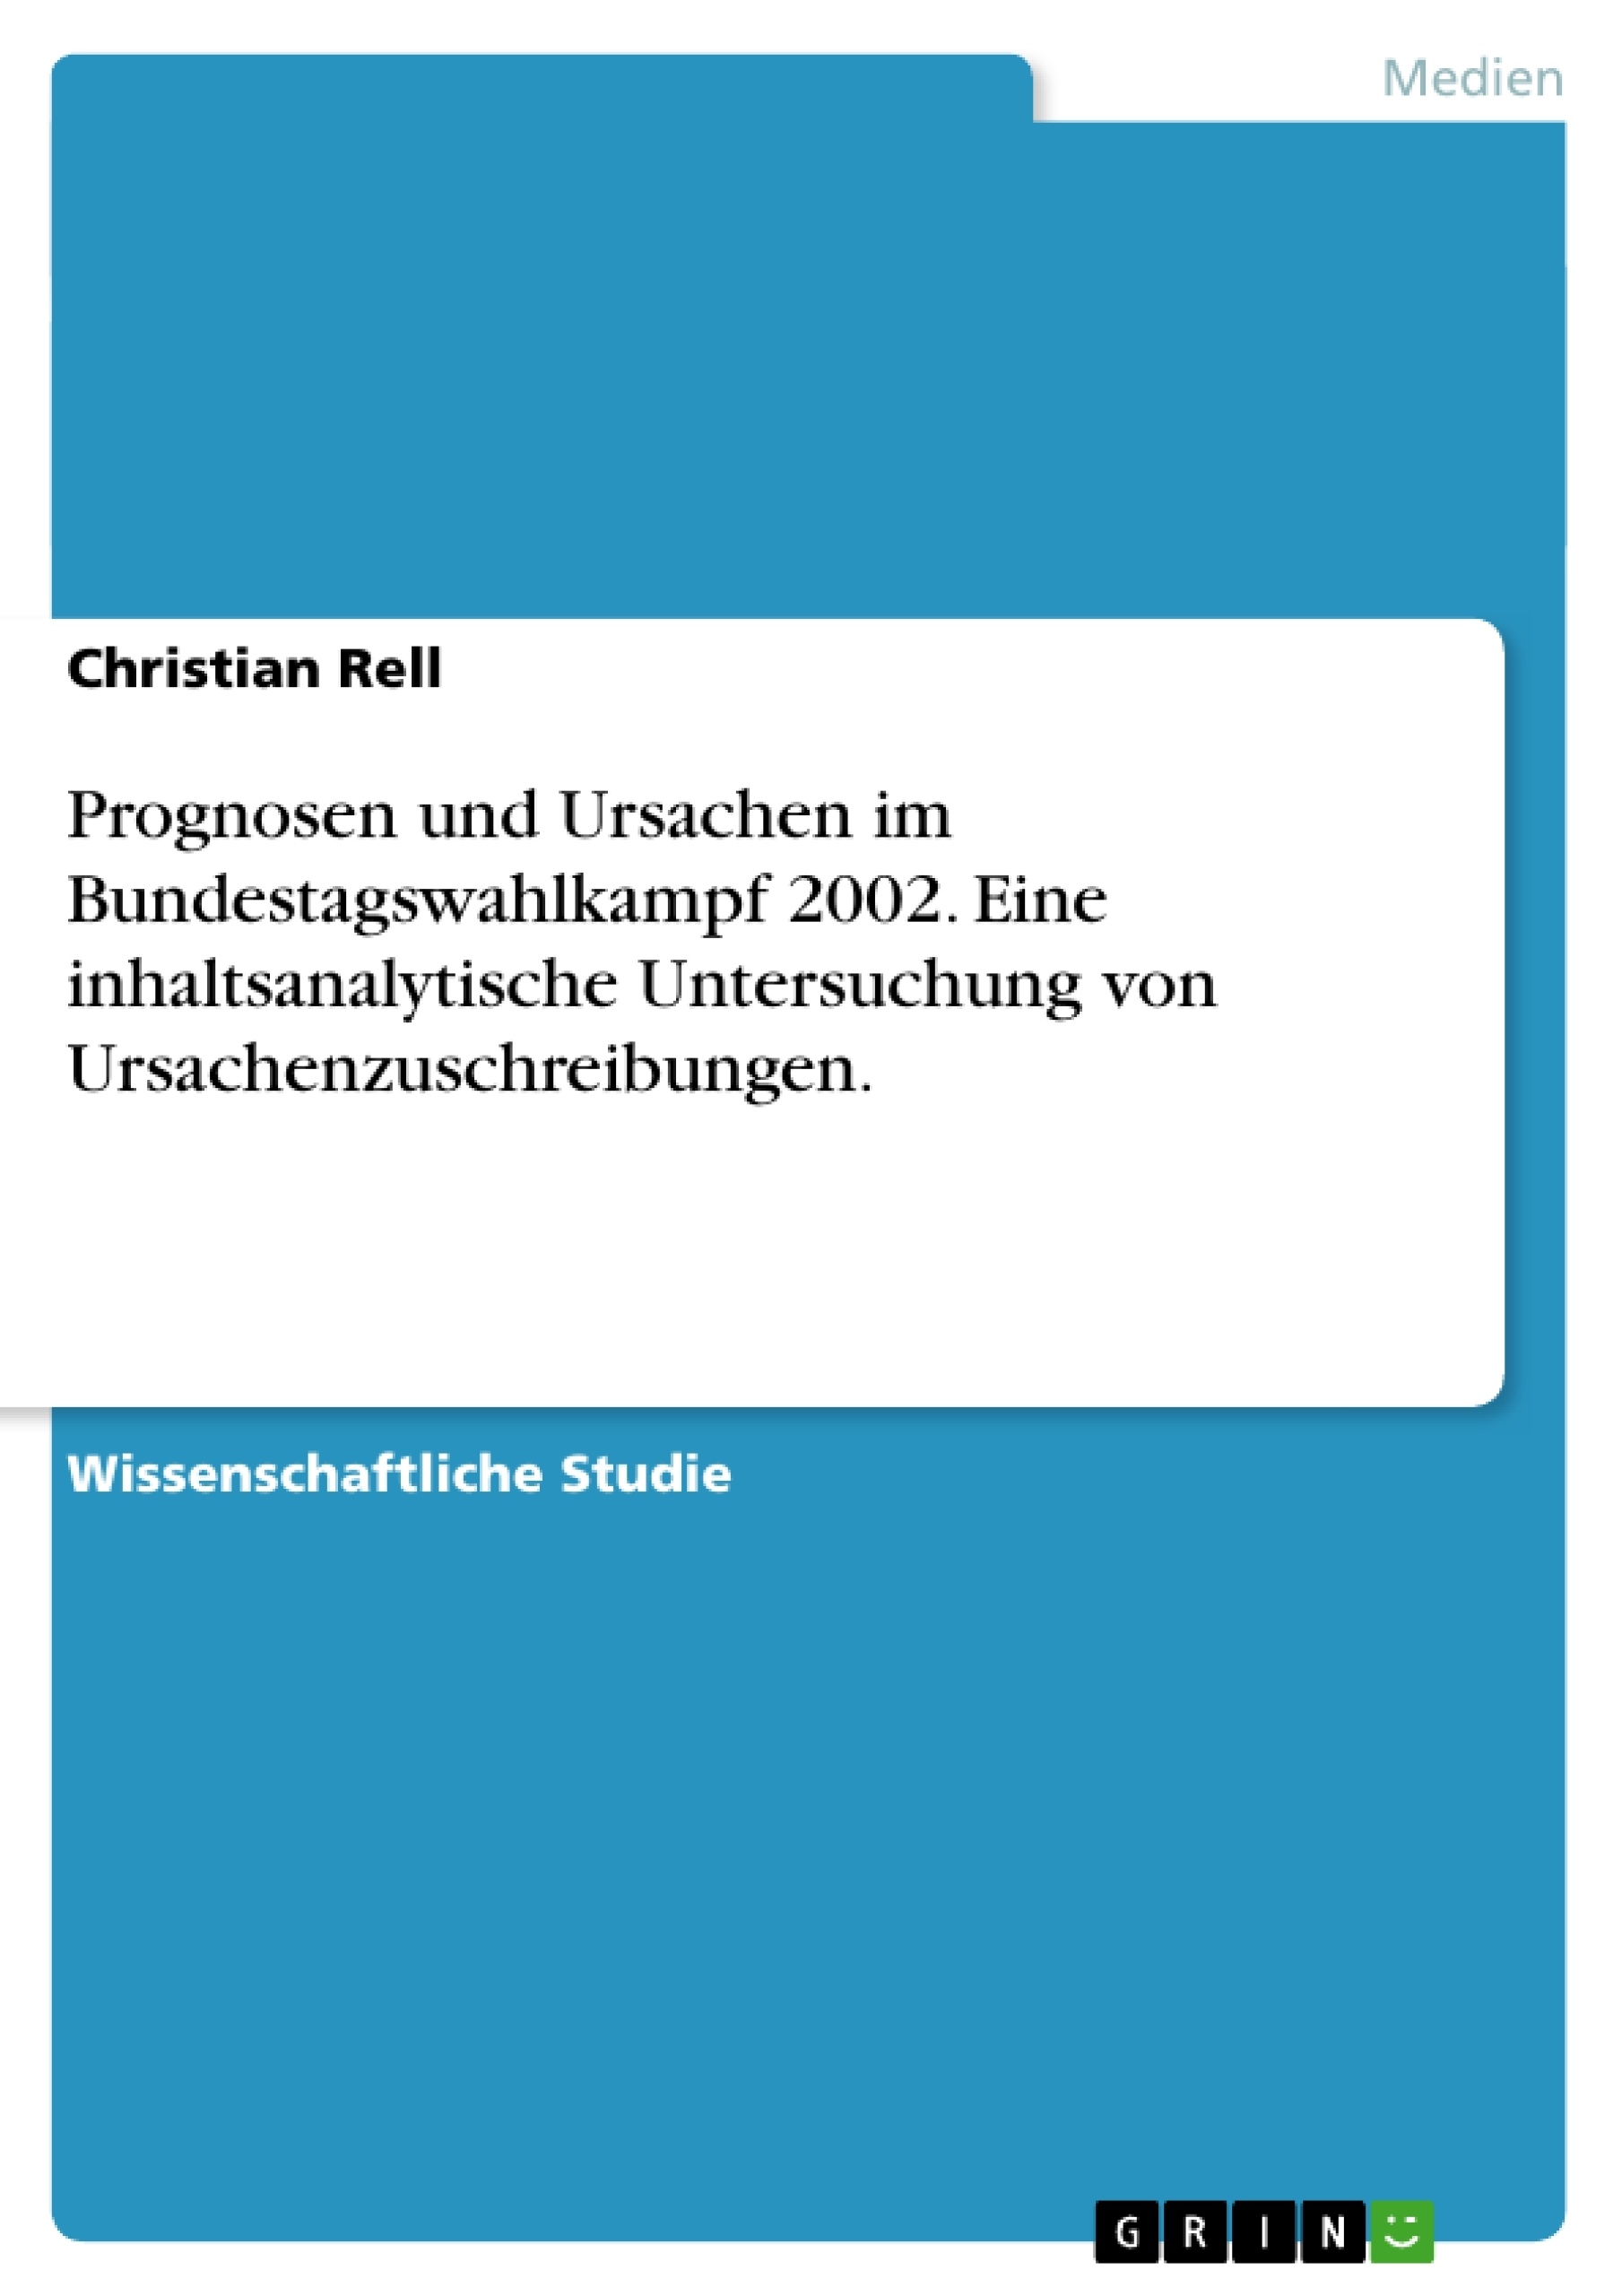 Título: Prognosen und Ursachen im Bundestagswahlkampf 2002. Eine inhaltsanalytische Untersuchung von Ursachenzuschreibungen.